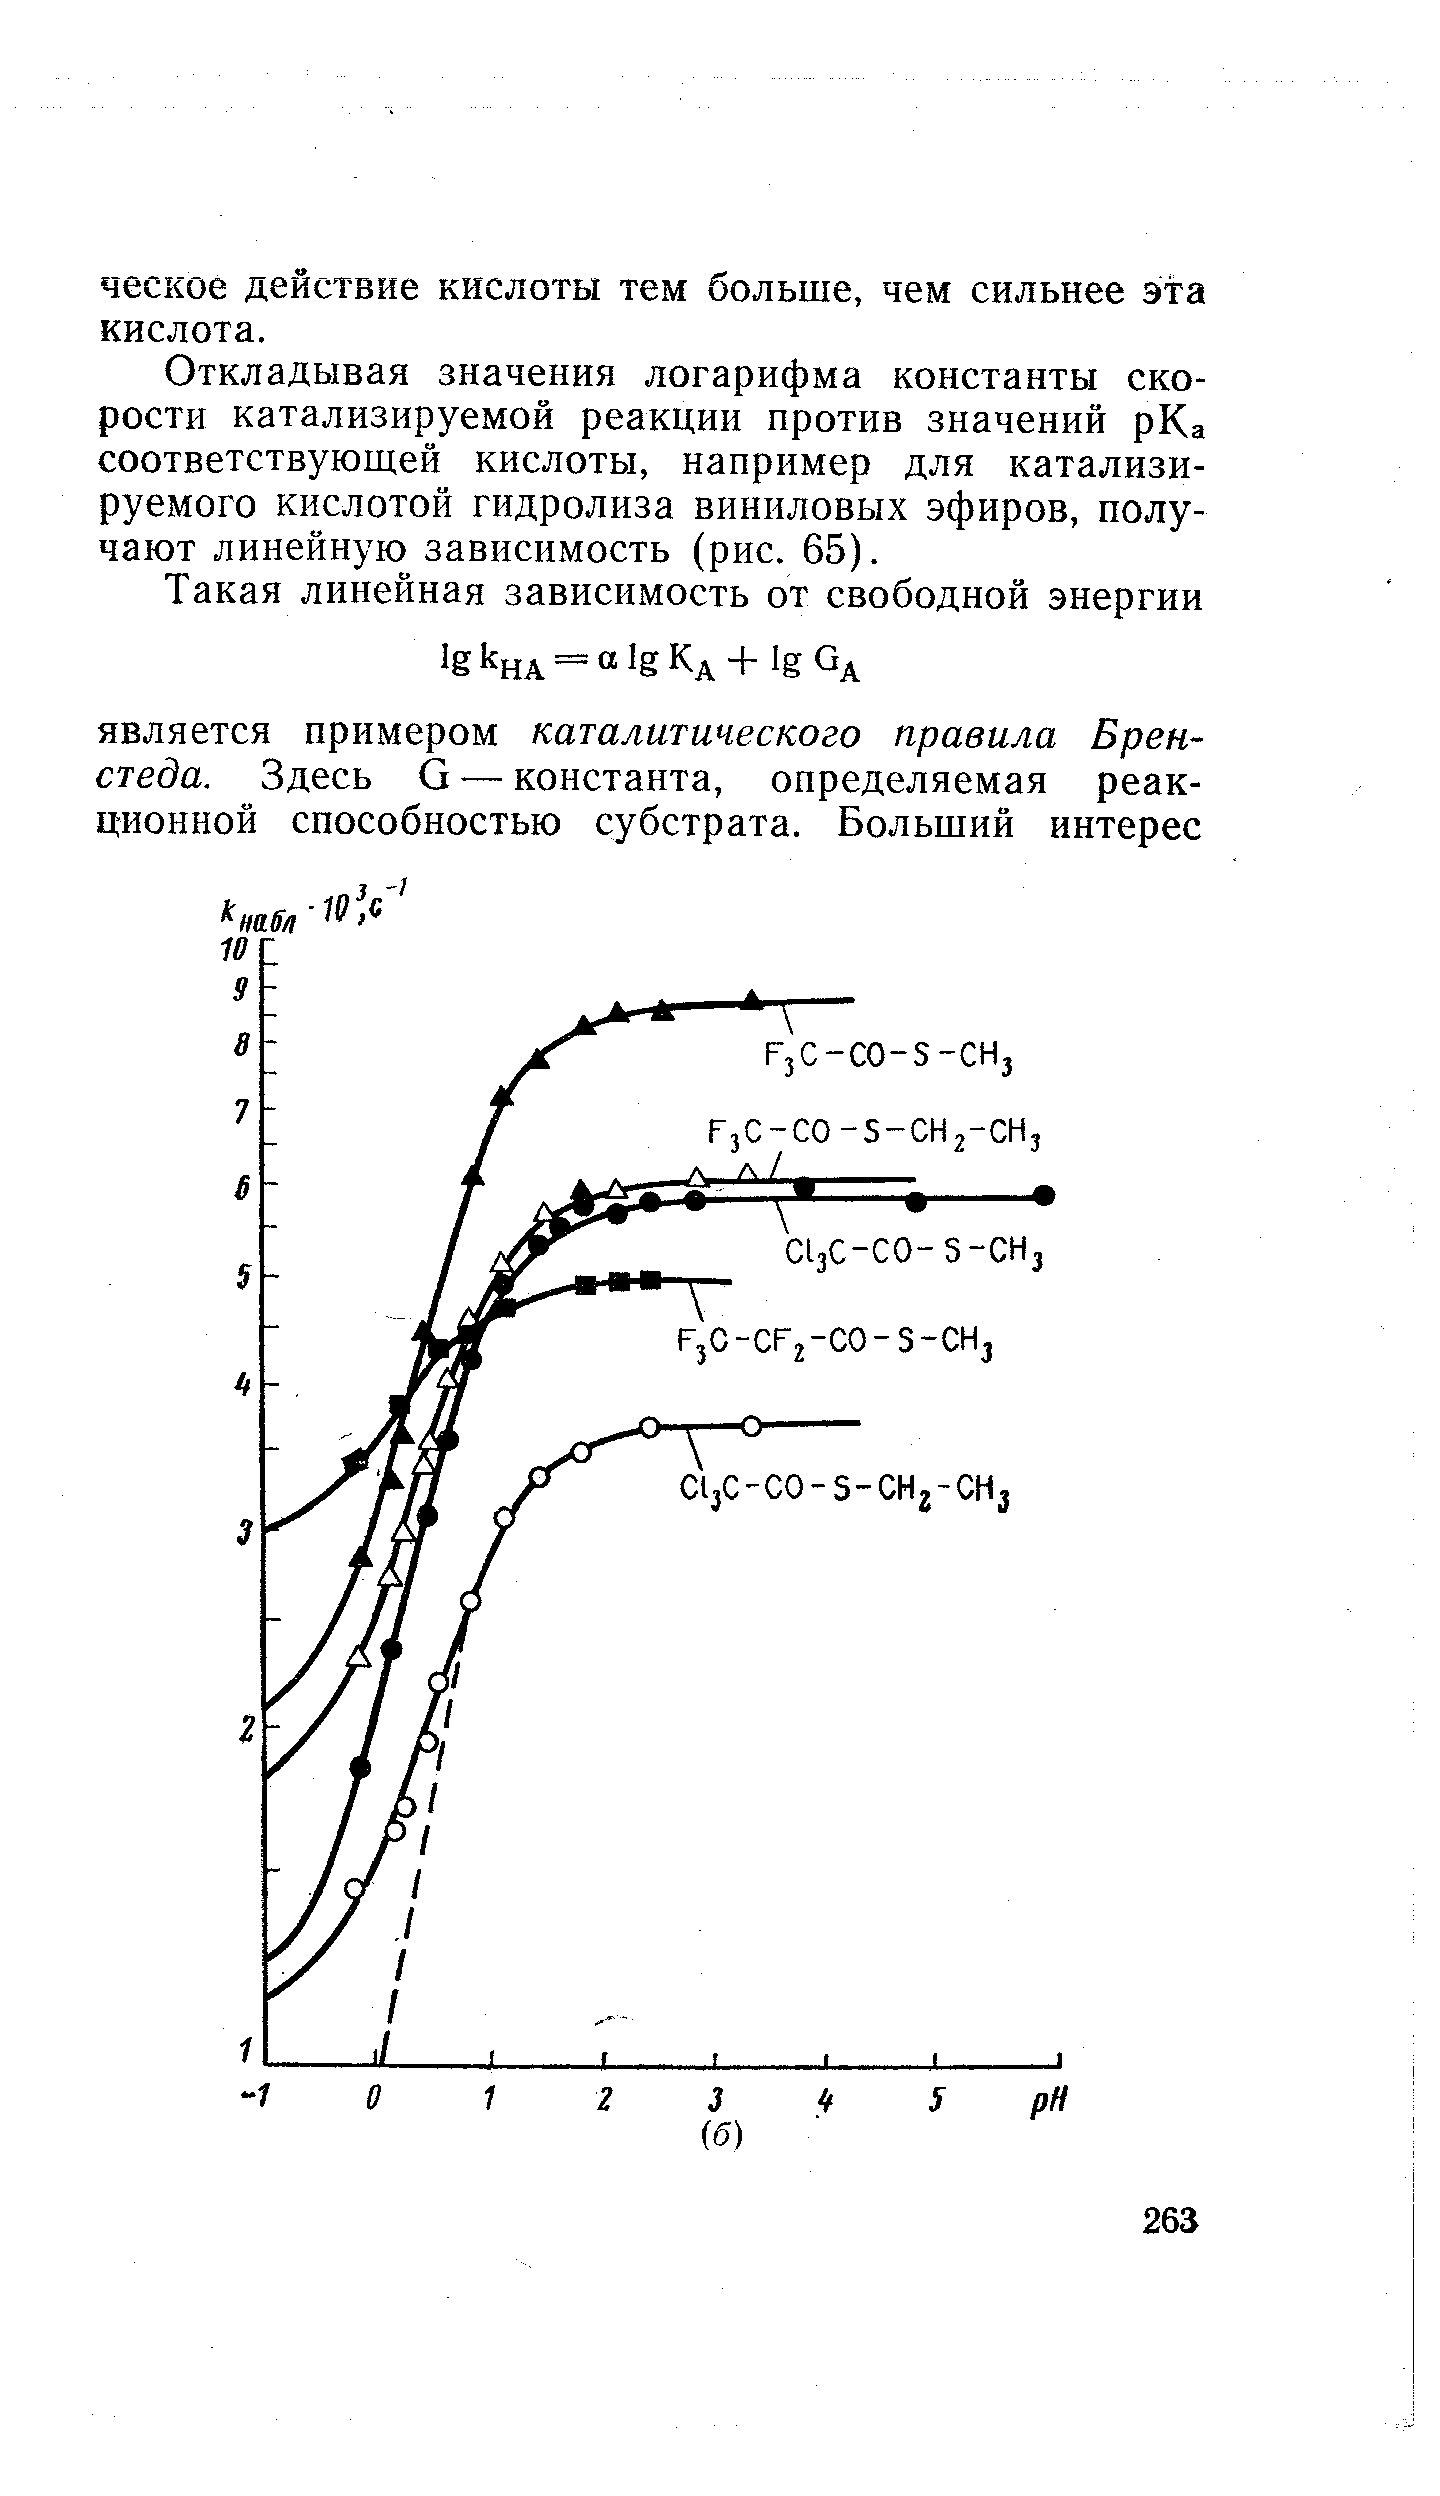 Откладывая значения логарифма константы скорости катализируемой реакции против значений рКа соответствующей кислоты, например для катализируемого кислотой гидролиза виниловых эфиров, получают линейную зависимость (рис. 65).